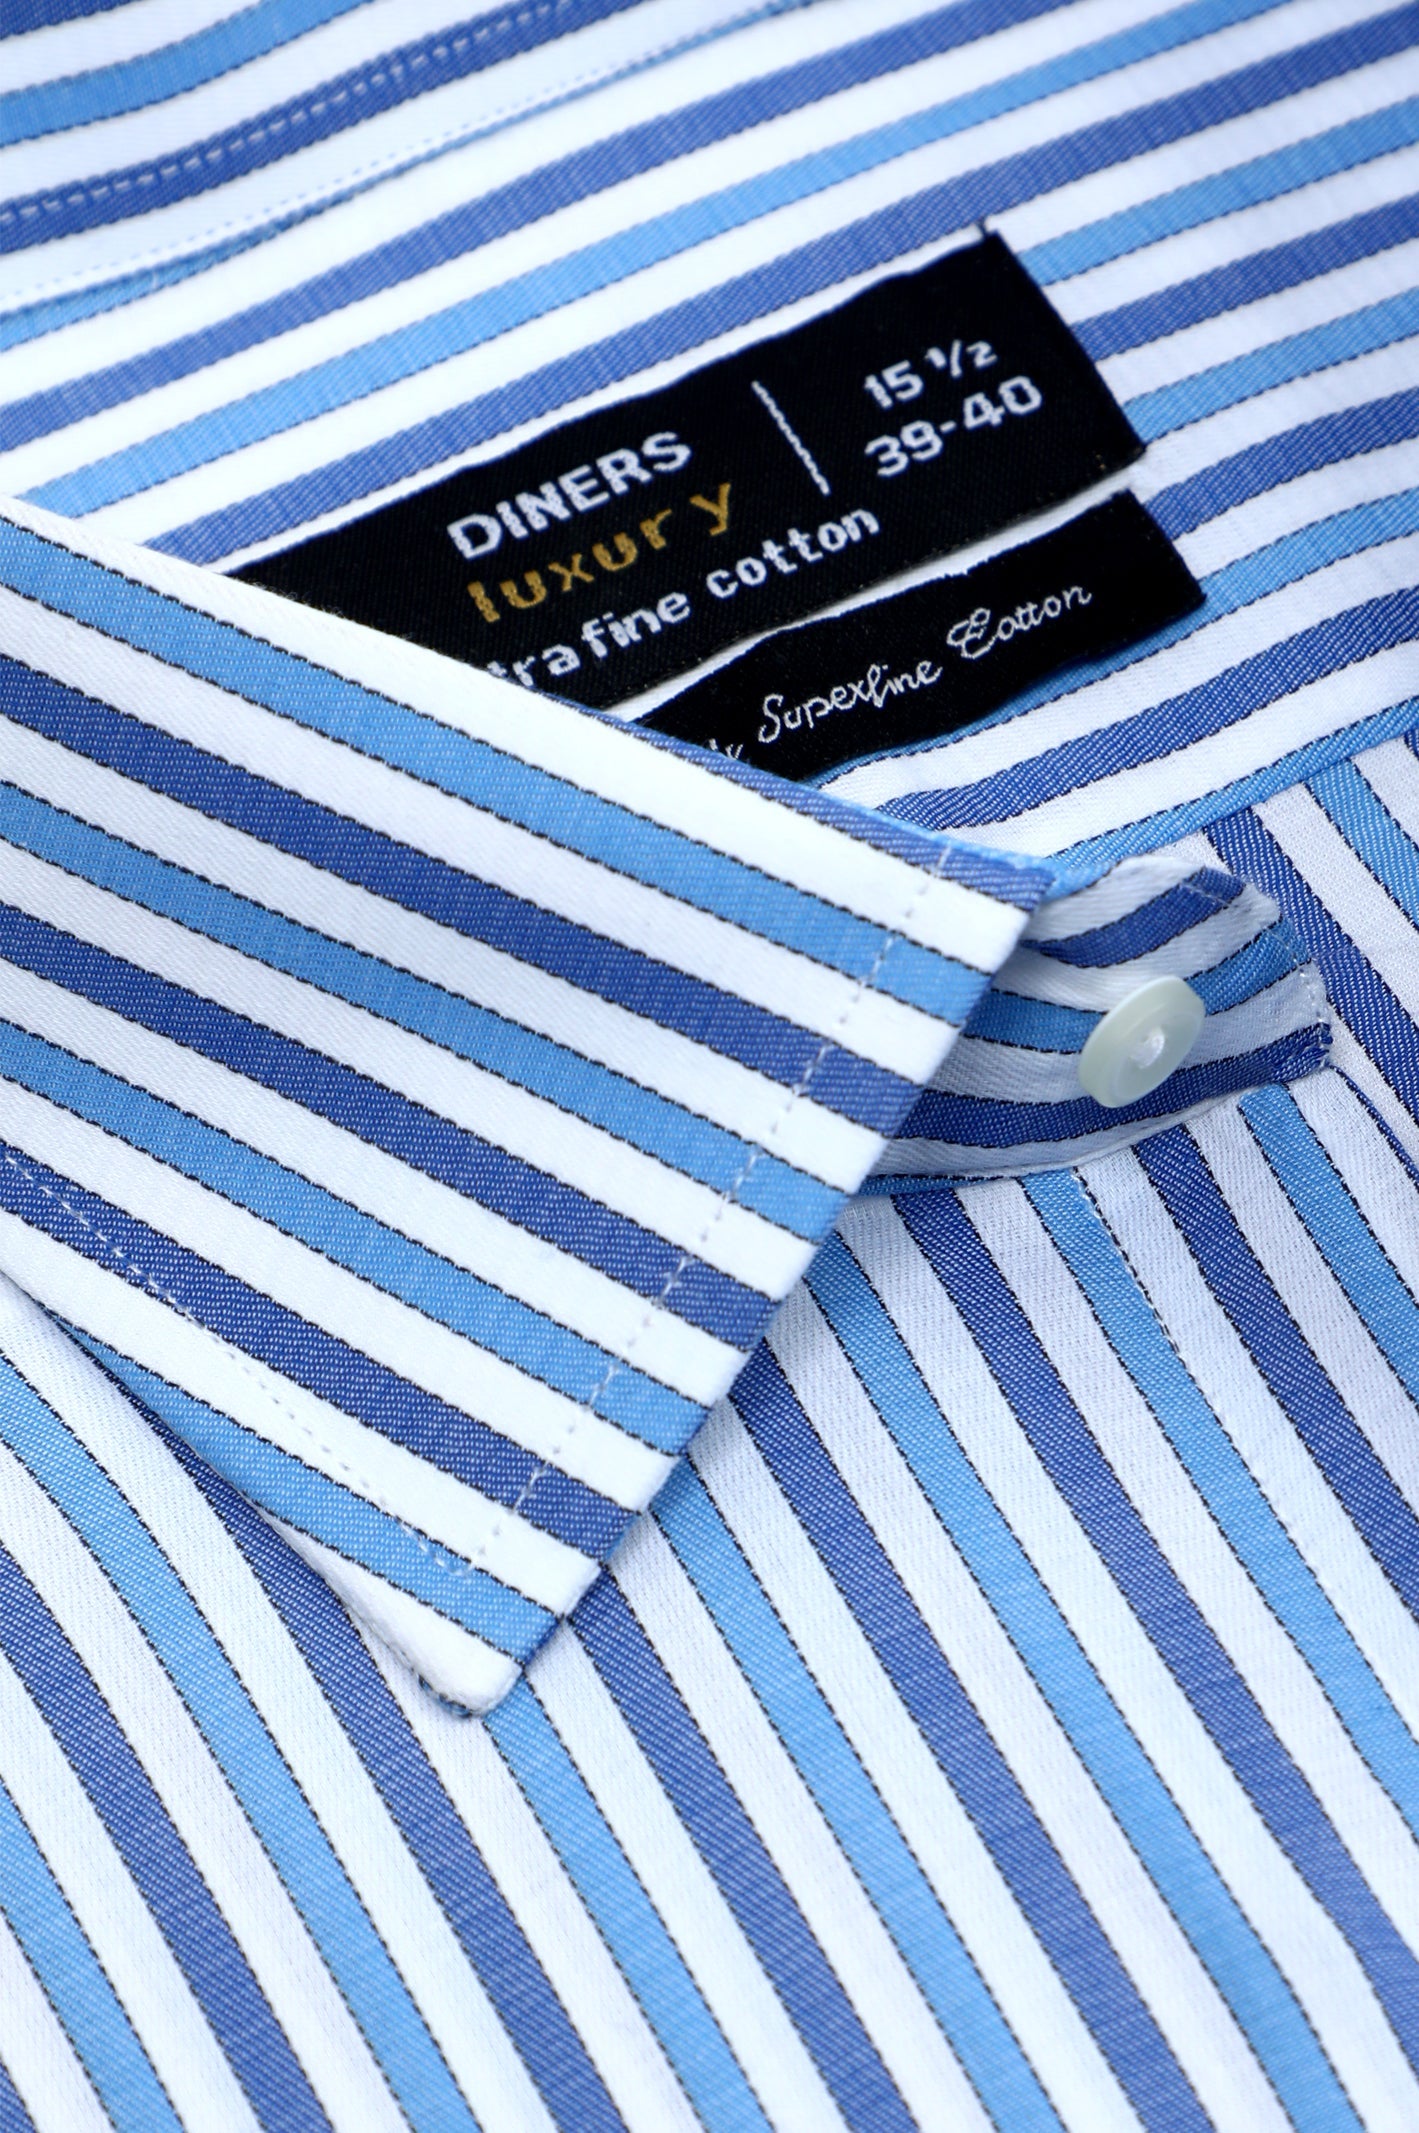 Formal Men Shirt SKU: AD28273-BLUE - Diners